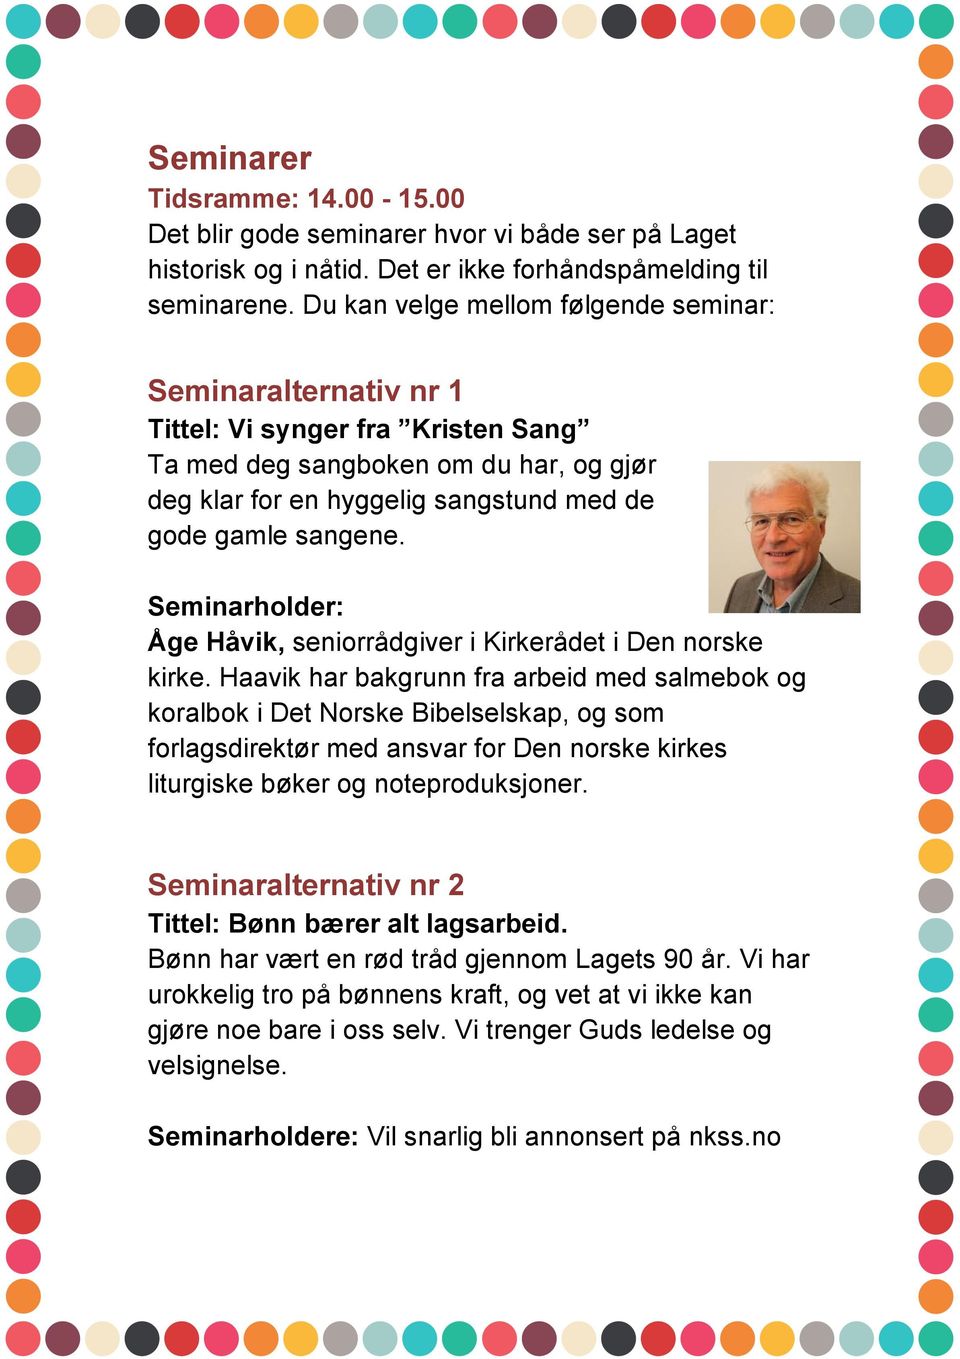 Seminarholder: Åge Håvik, seniorrådgiver i Kirkerådet i Den norske kirke.